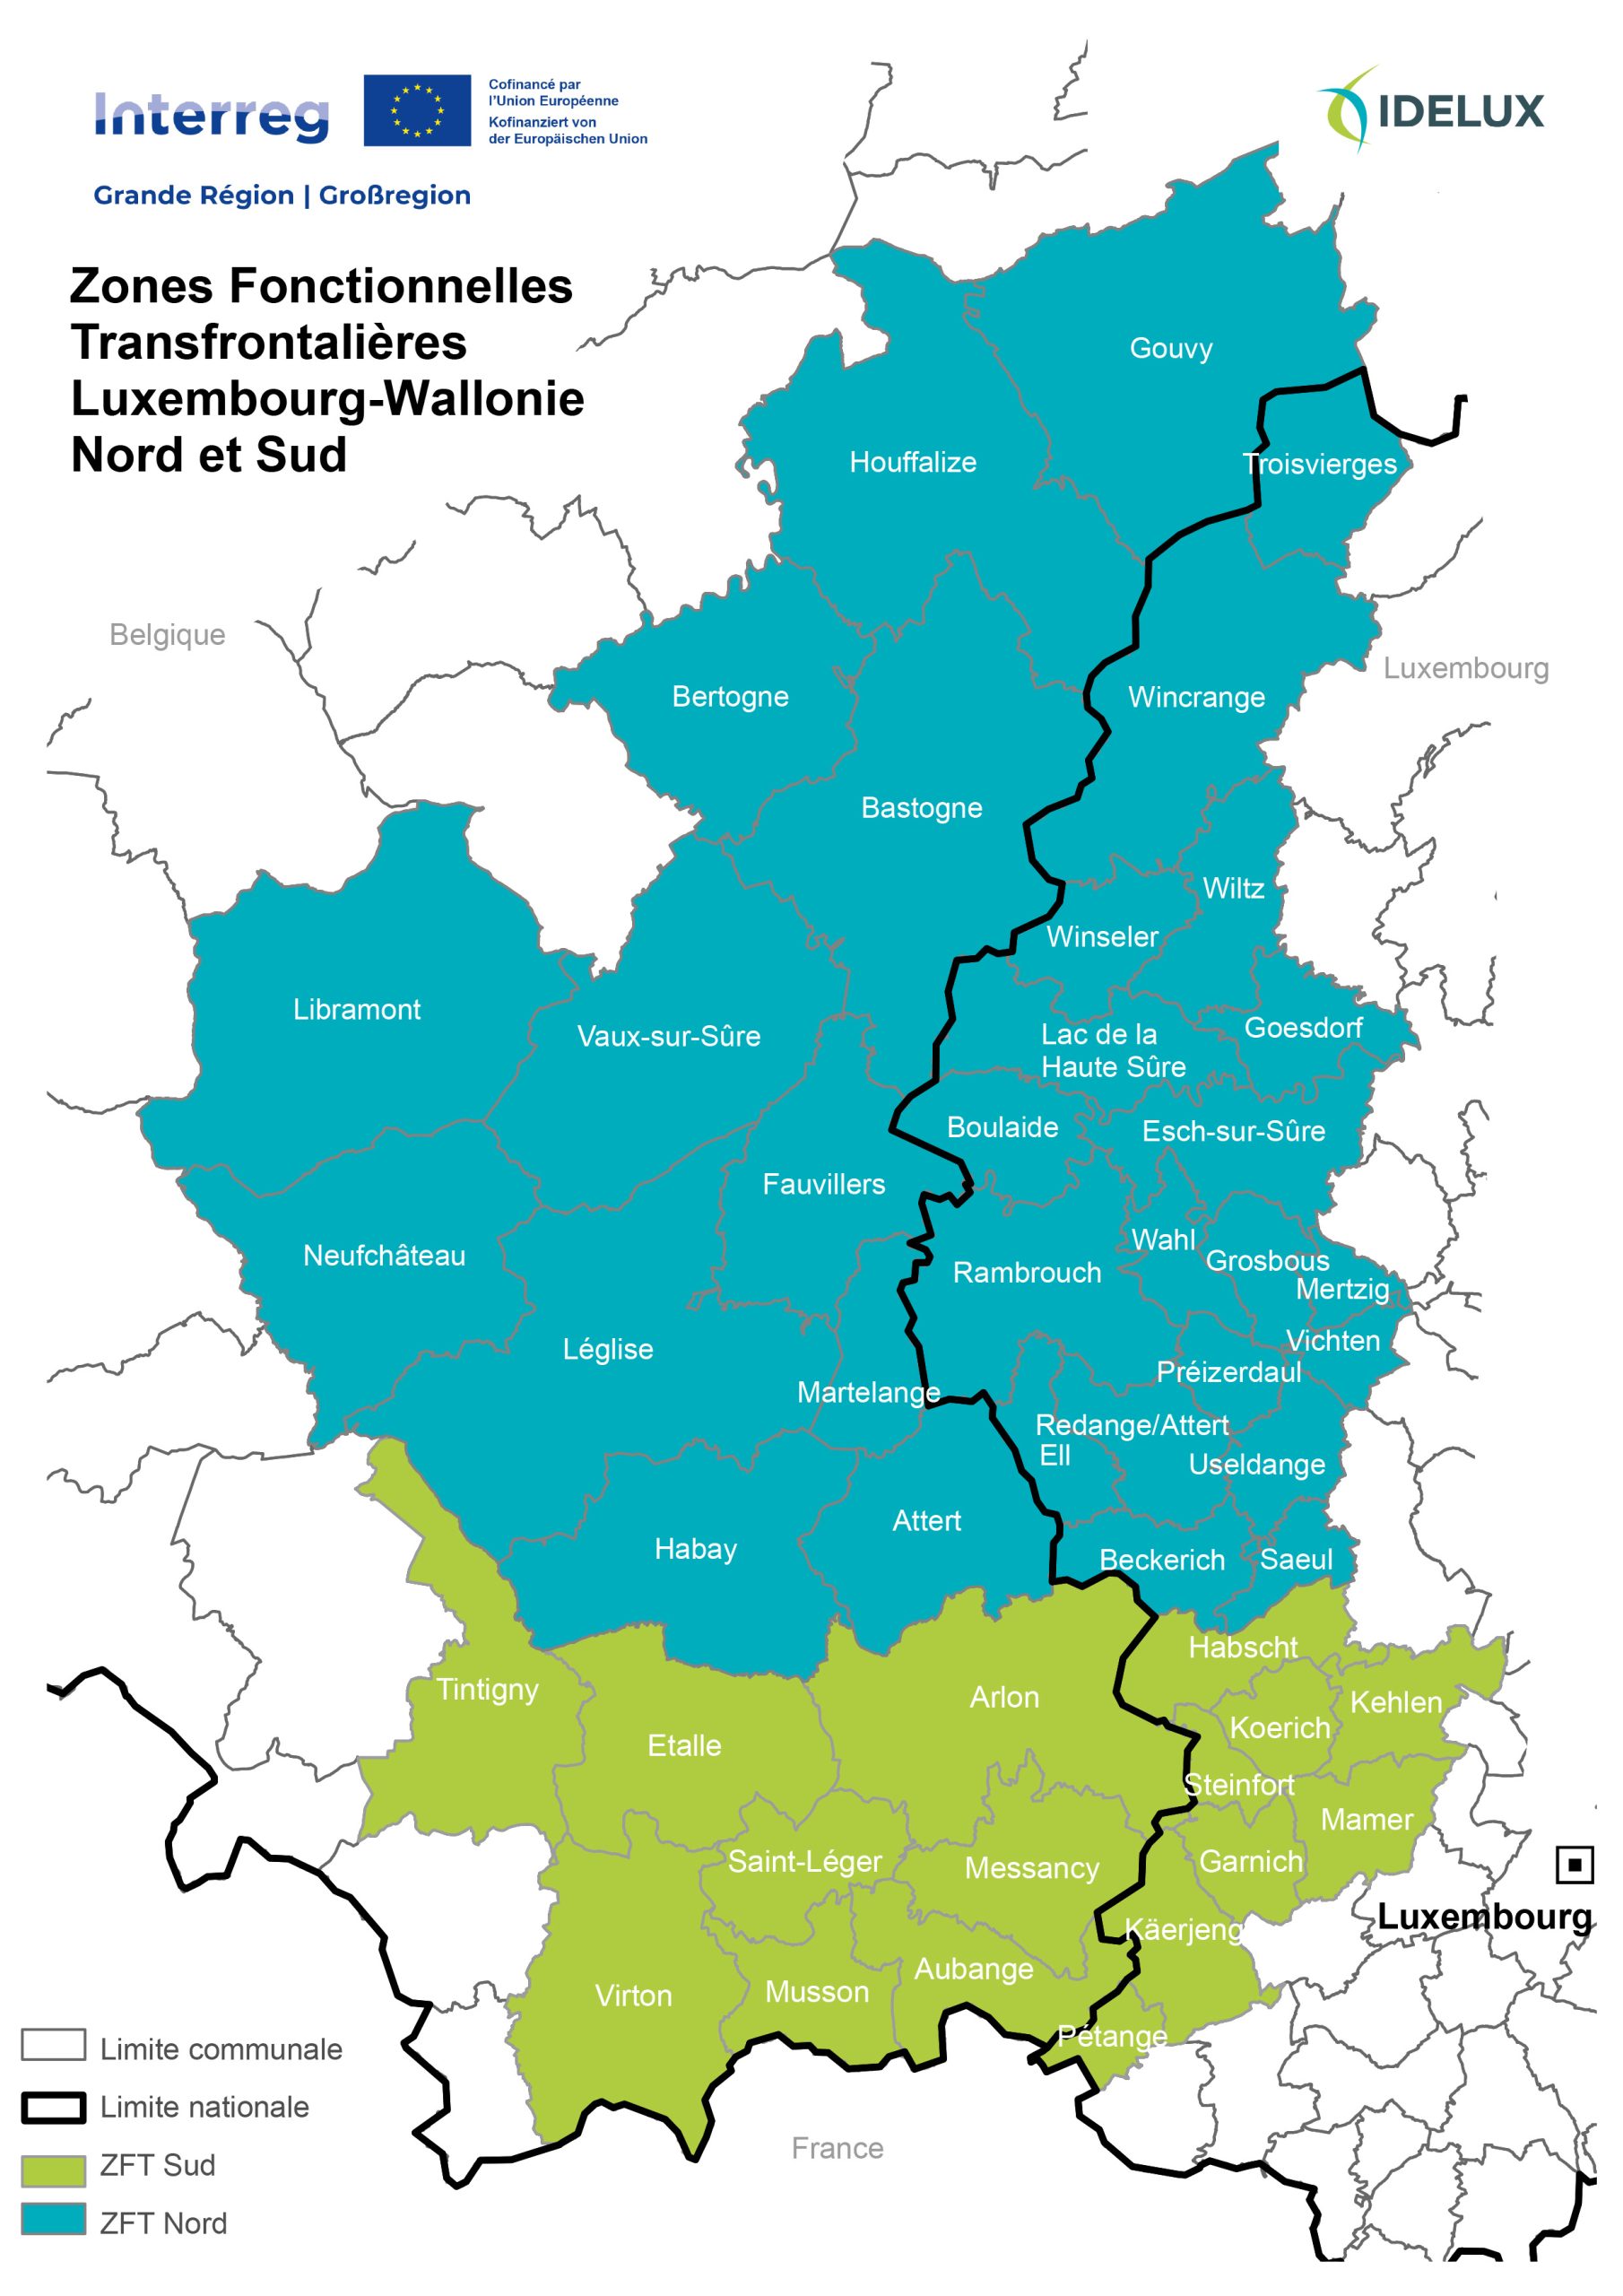 08/05 : Evènement de lancement des appels à projets des Zones Fonctionnelles Transfrontalières Luxembourg-Wallonie Nord et Sud